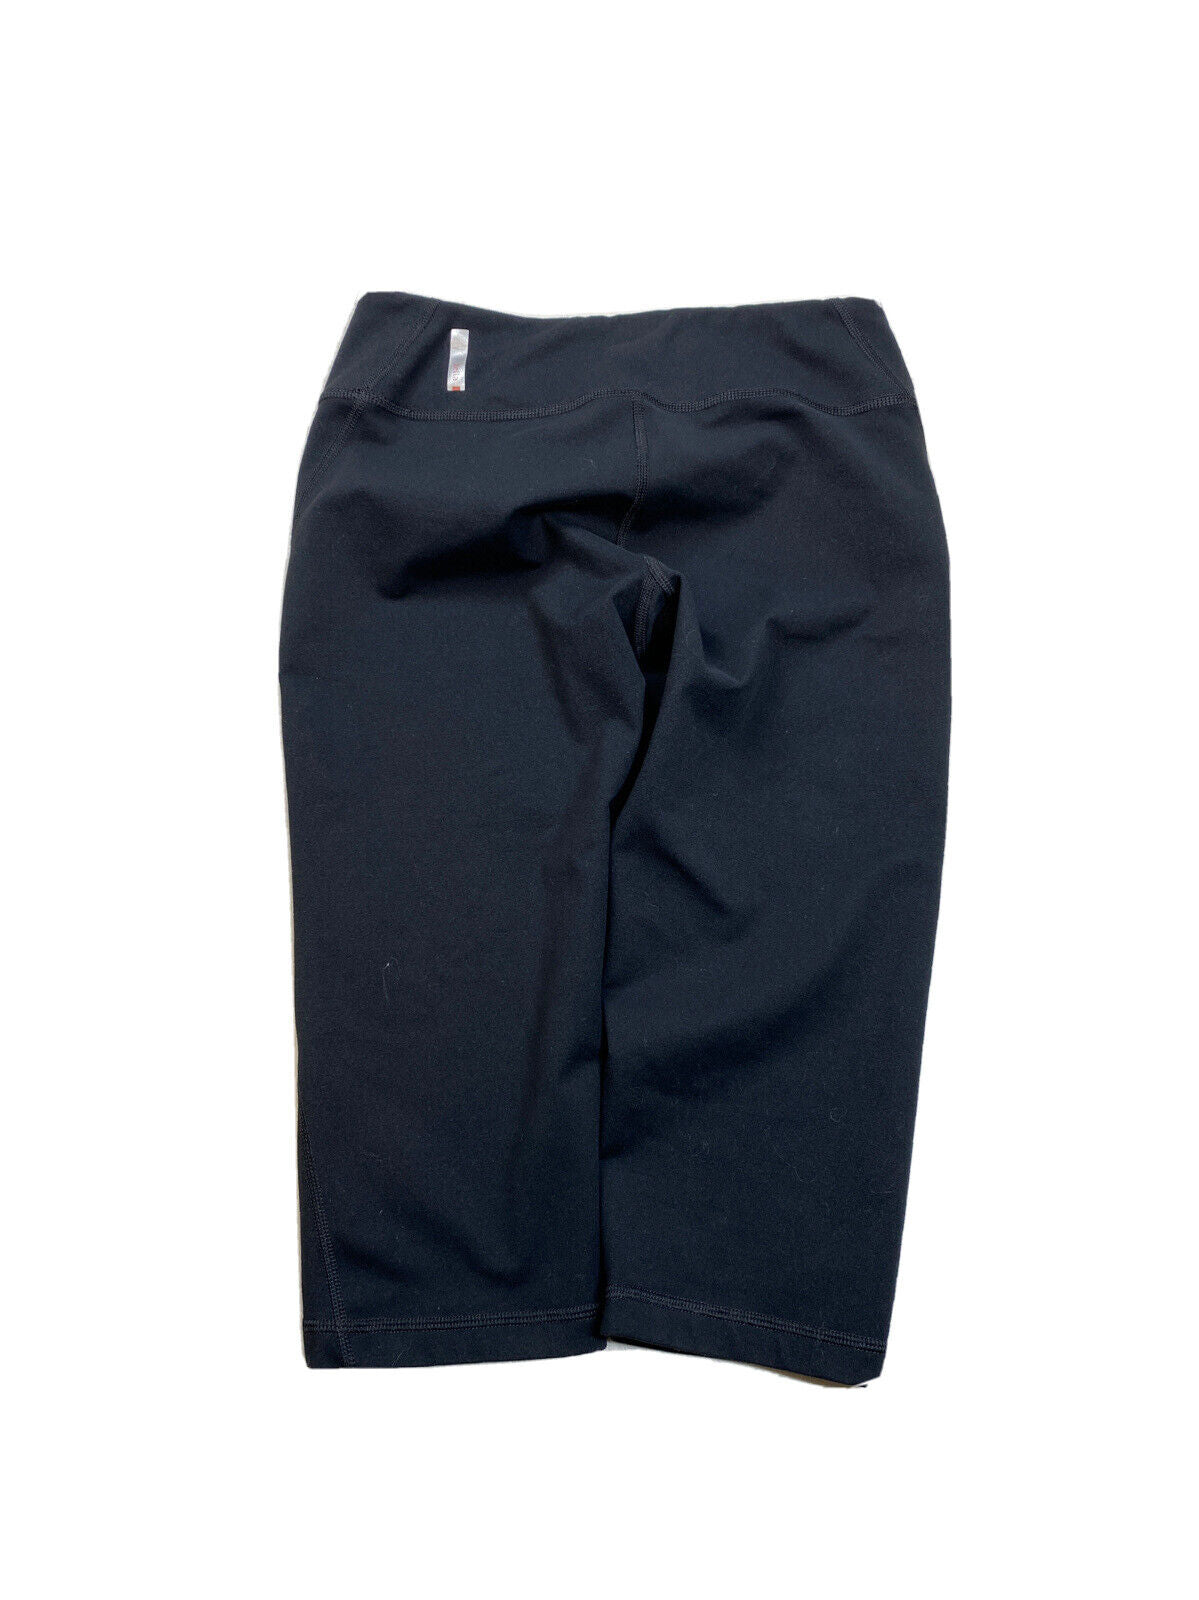 Zella Pantalones deportivos recortados negros para mujer - S